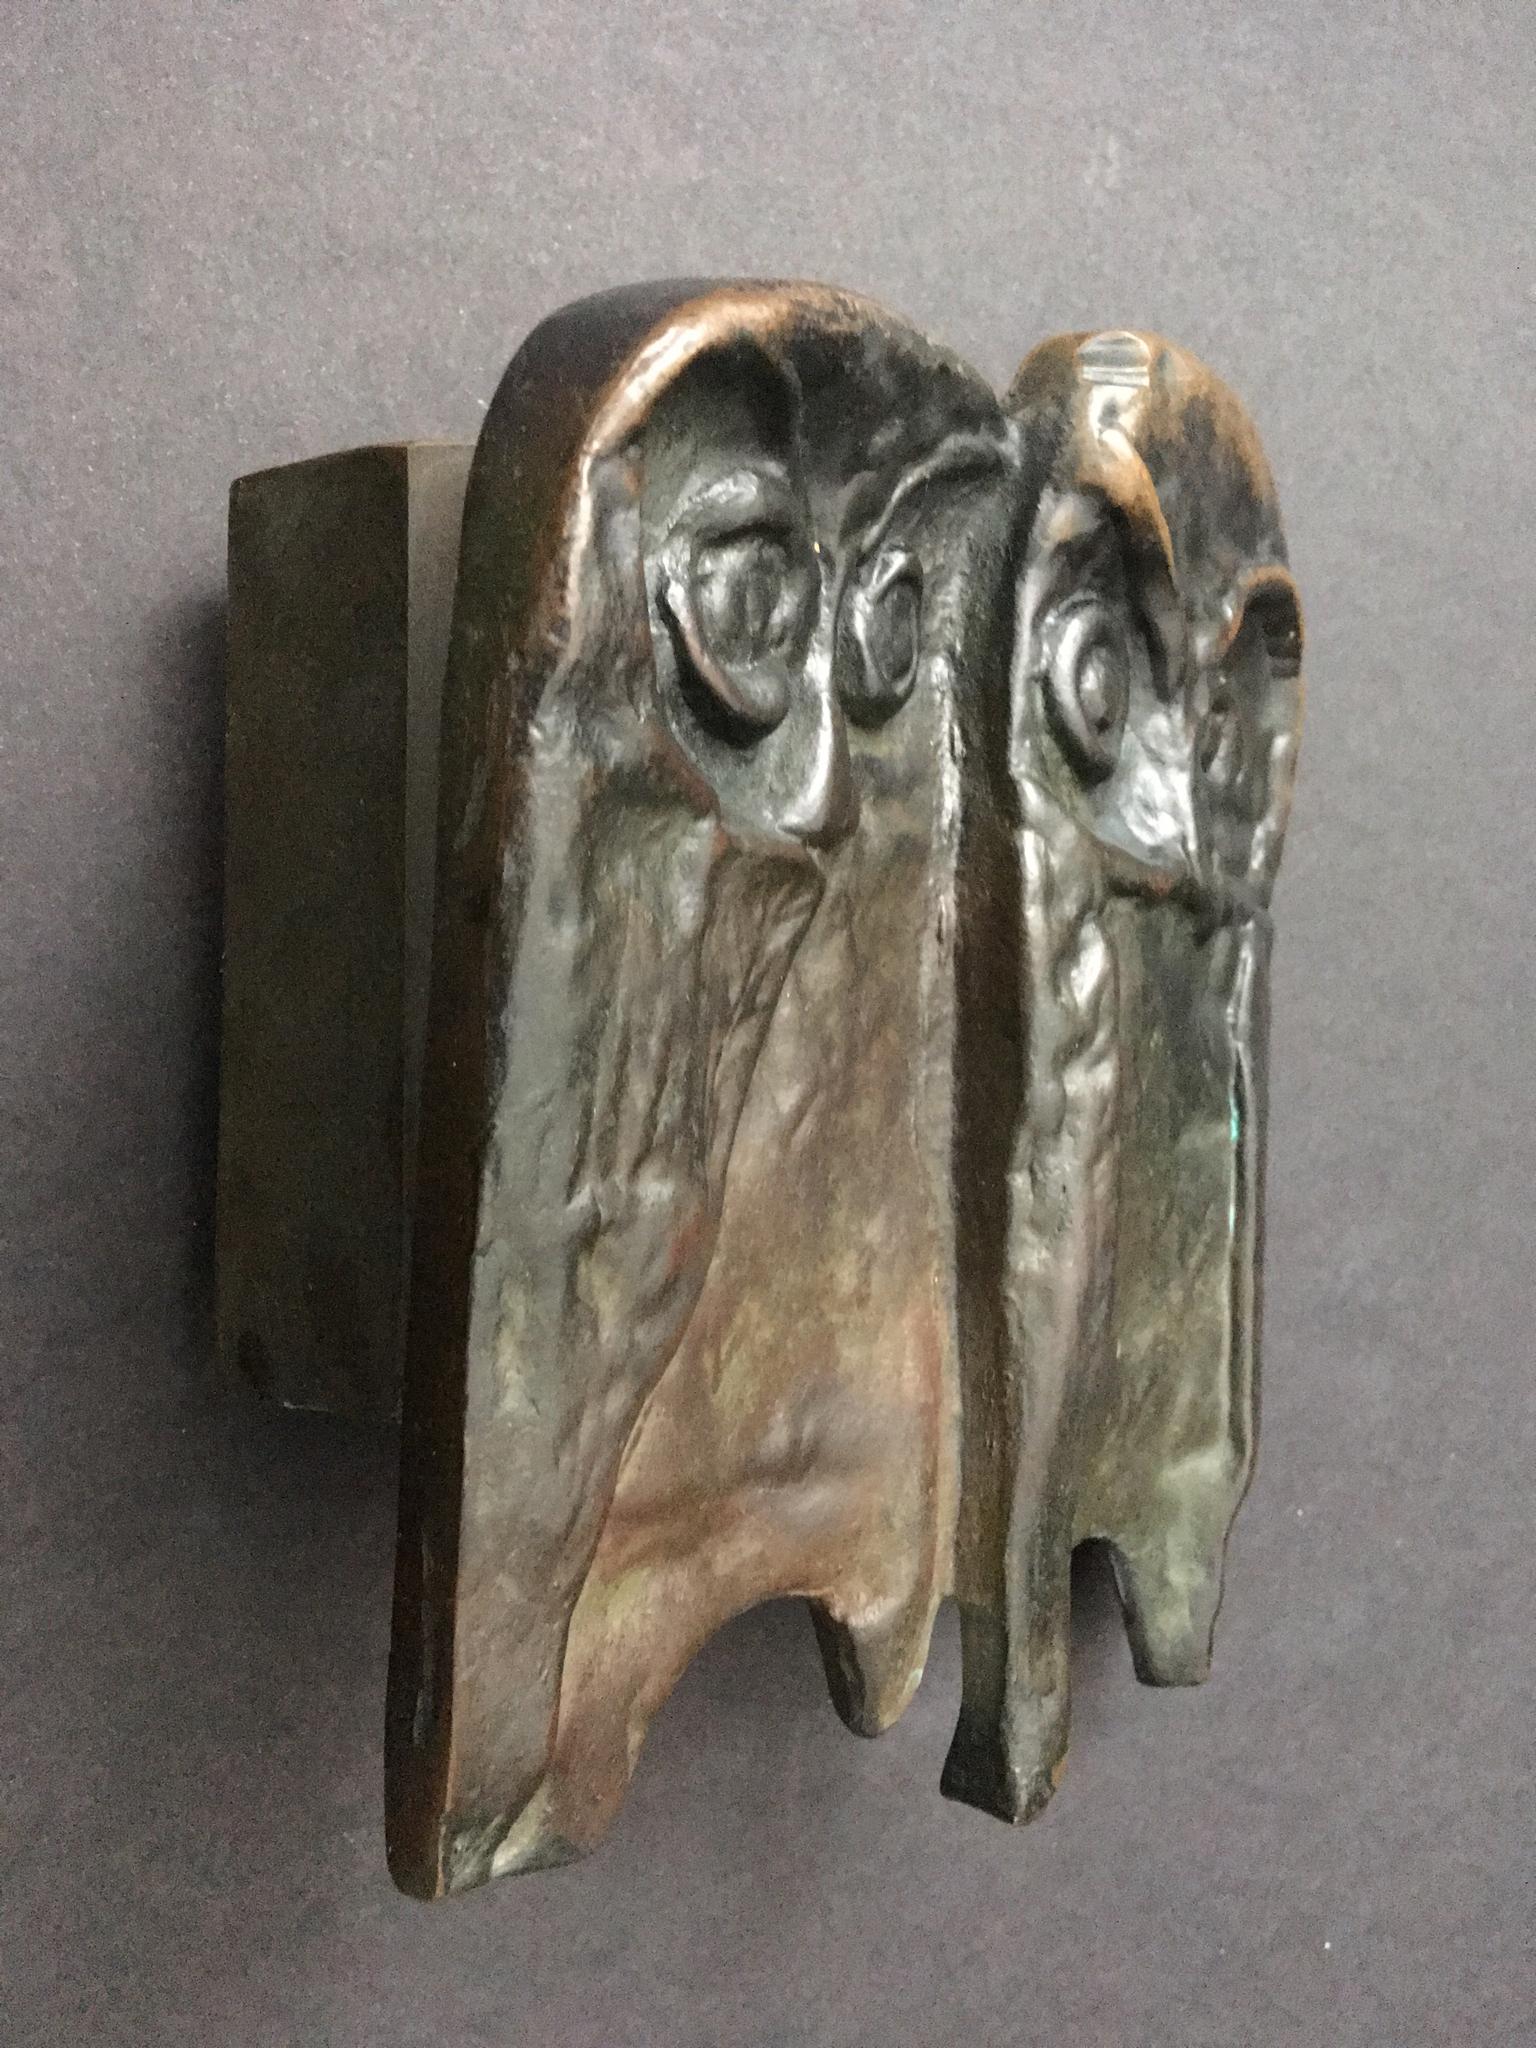 Cast Bronze Push or Pull Door Handle with Owl Design, 20th Century, European